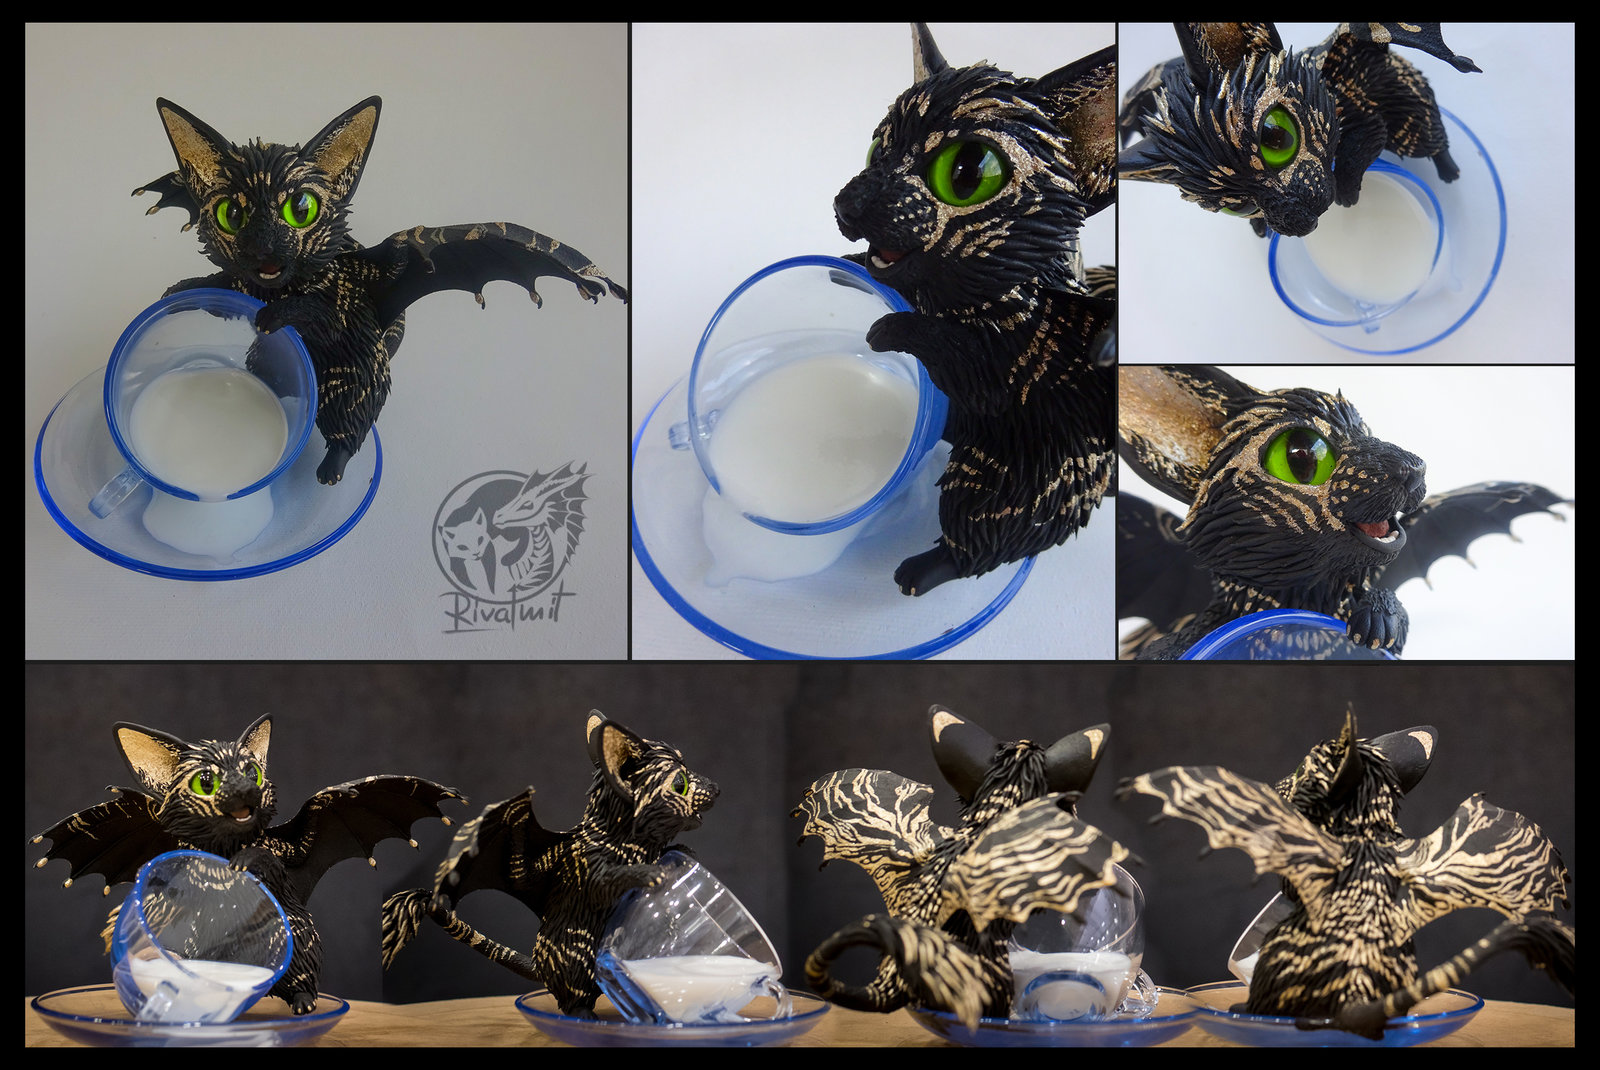 sculpture batkitty cat Spilt milk: Batkitty #11 Rare dominant gold mutation